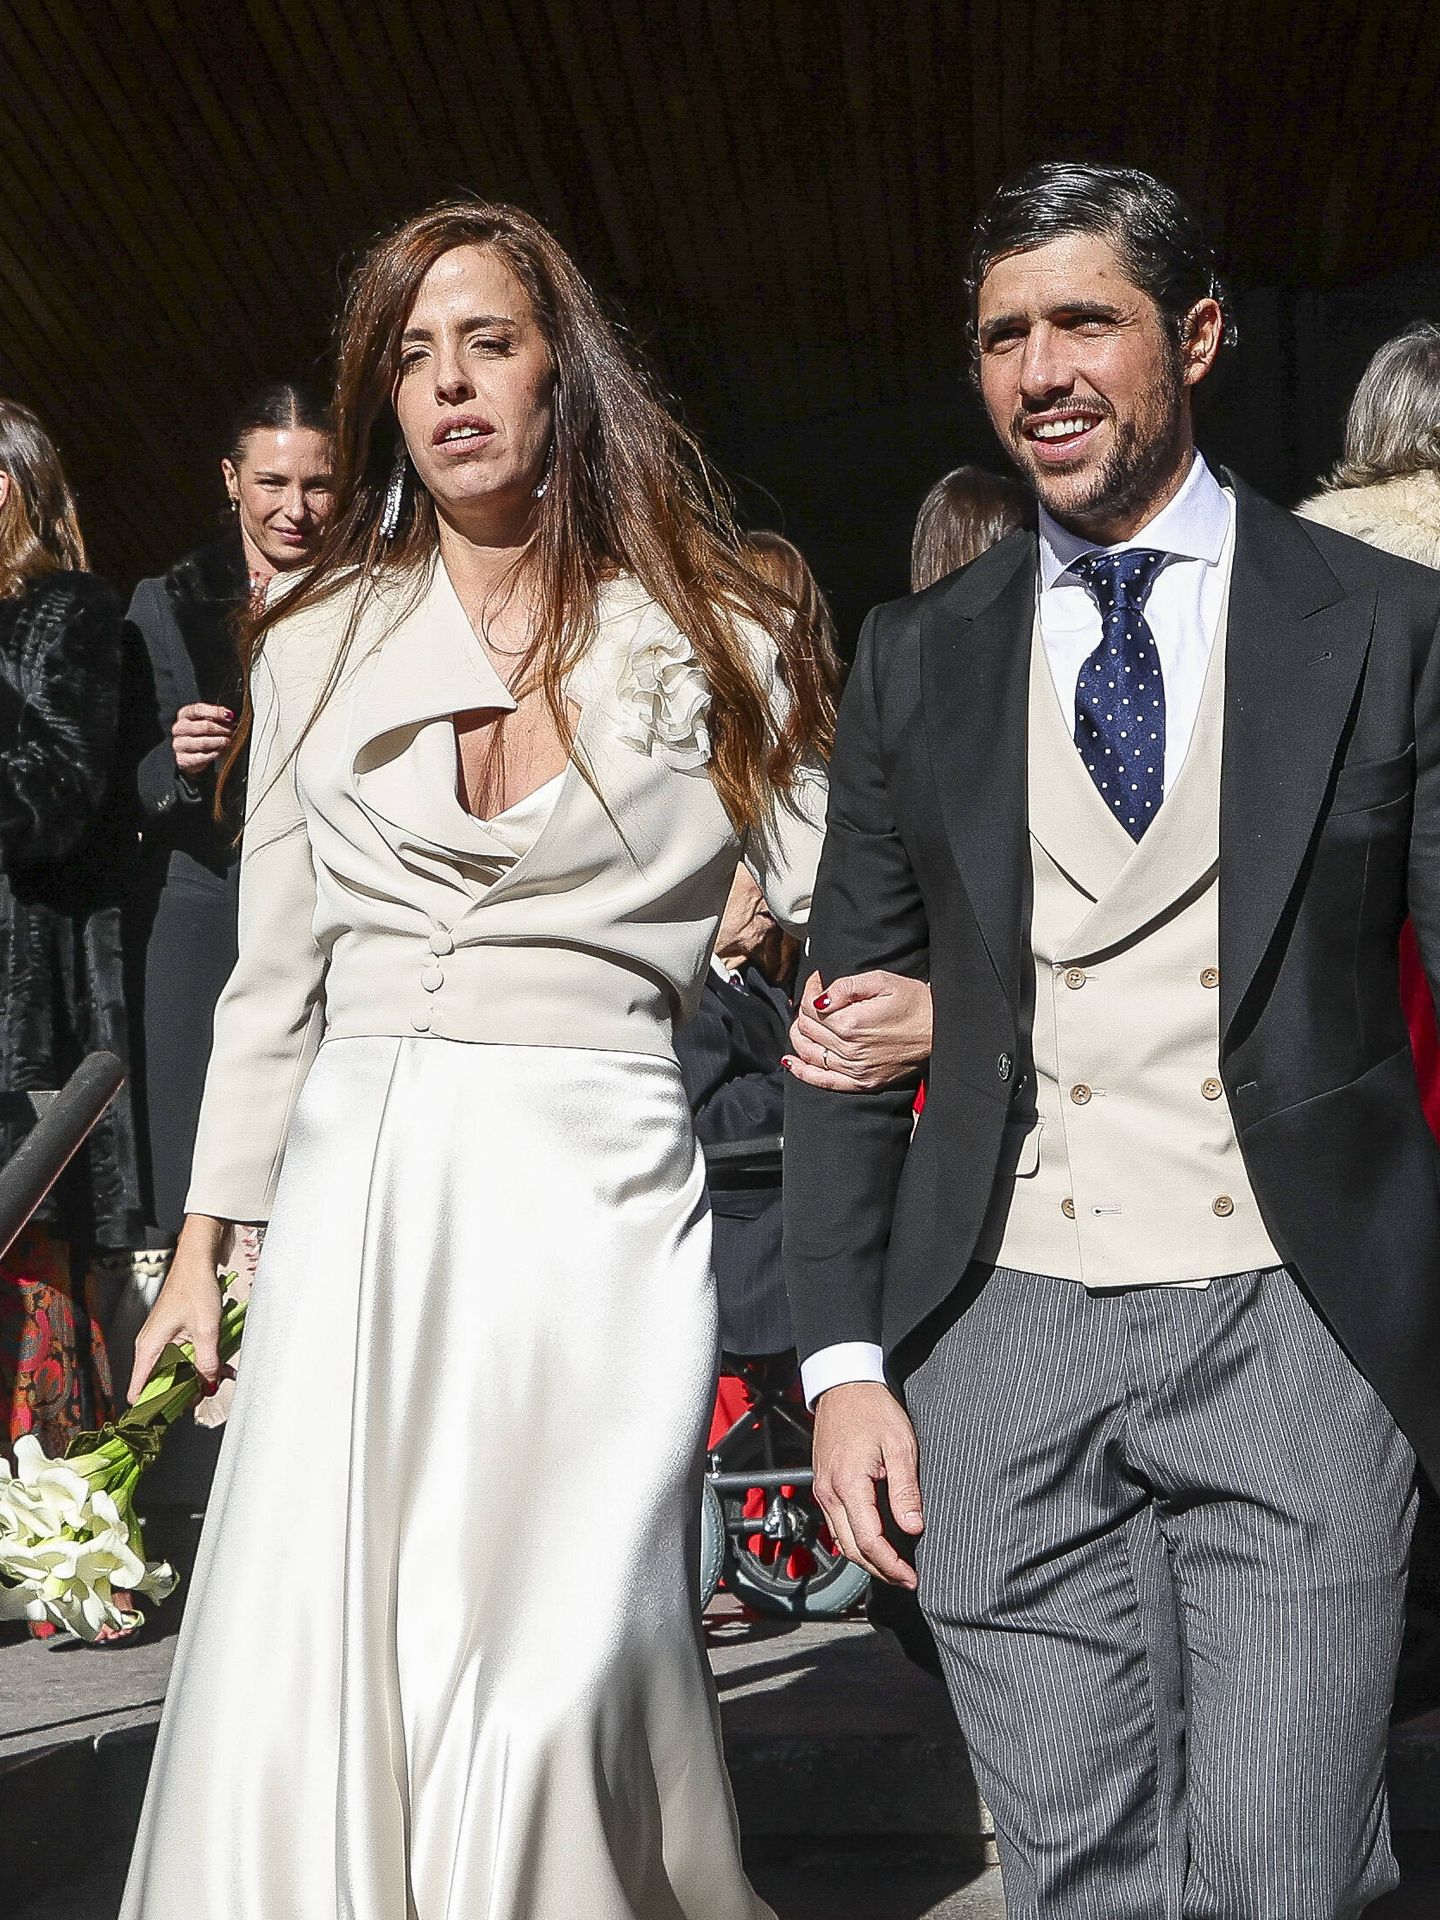 Mercedes Márquez e Ignacio Lizarraga Oscoz saliendo de la iglesia como marido y mujer. (Gtres)